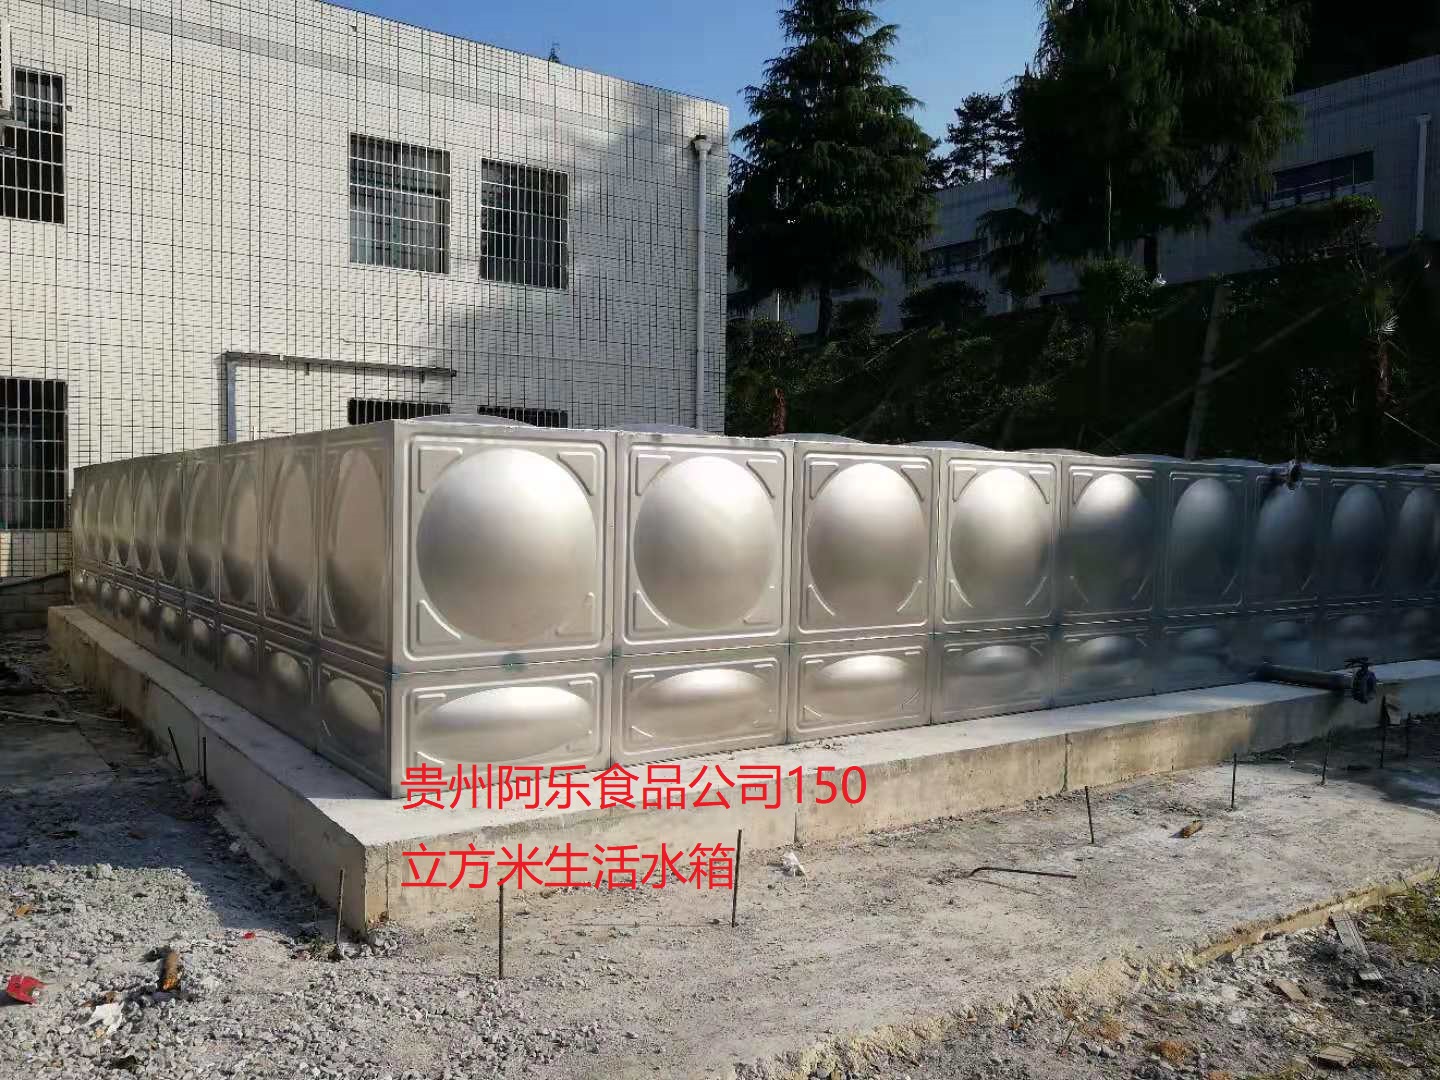 阿乐食品150吨水箱.jpg